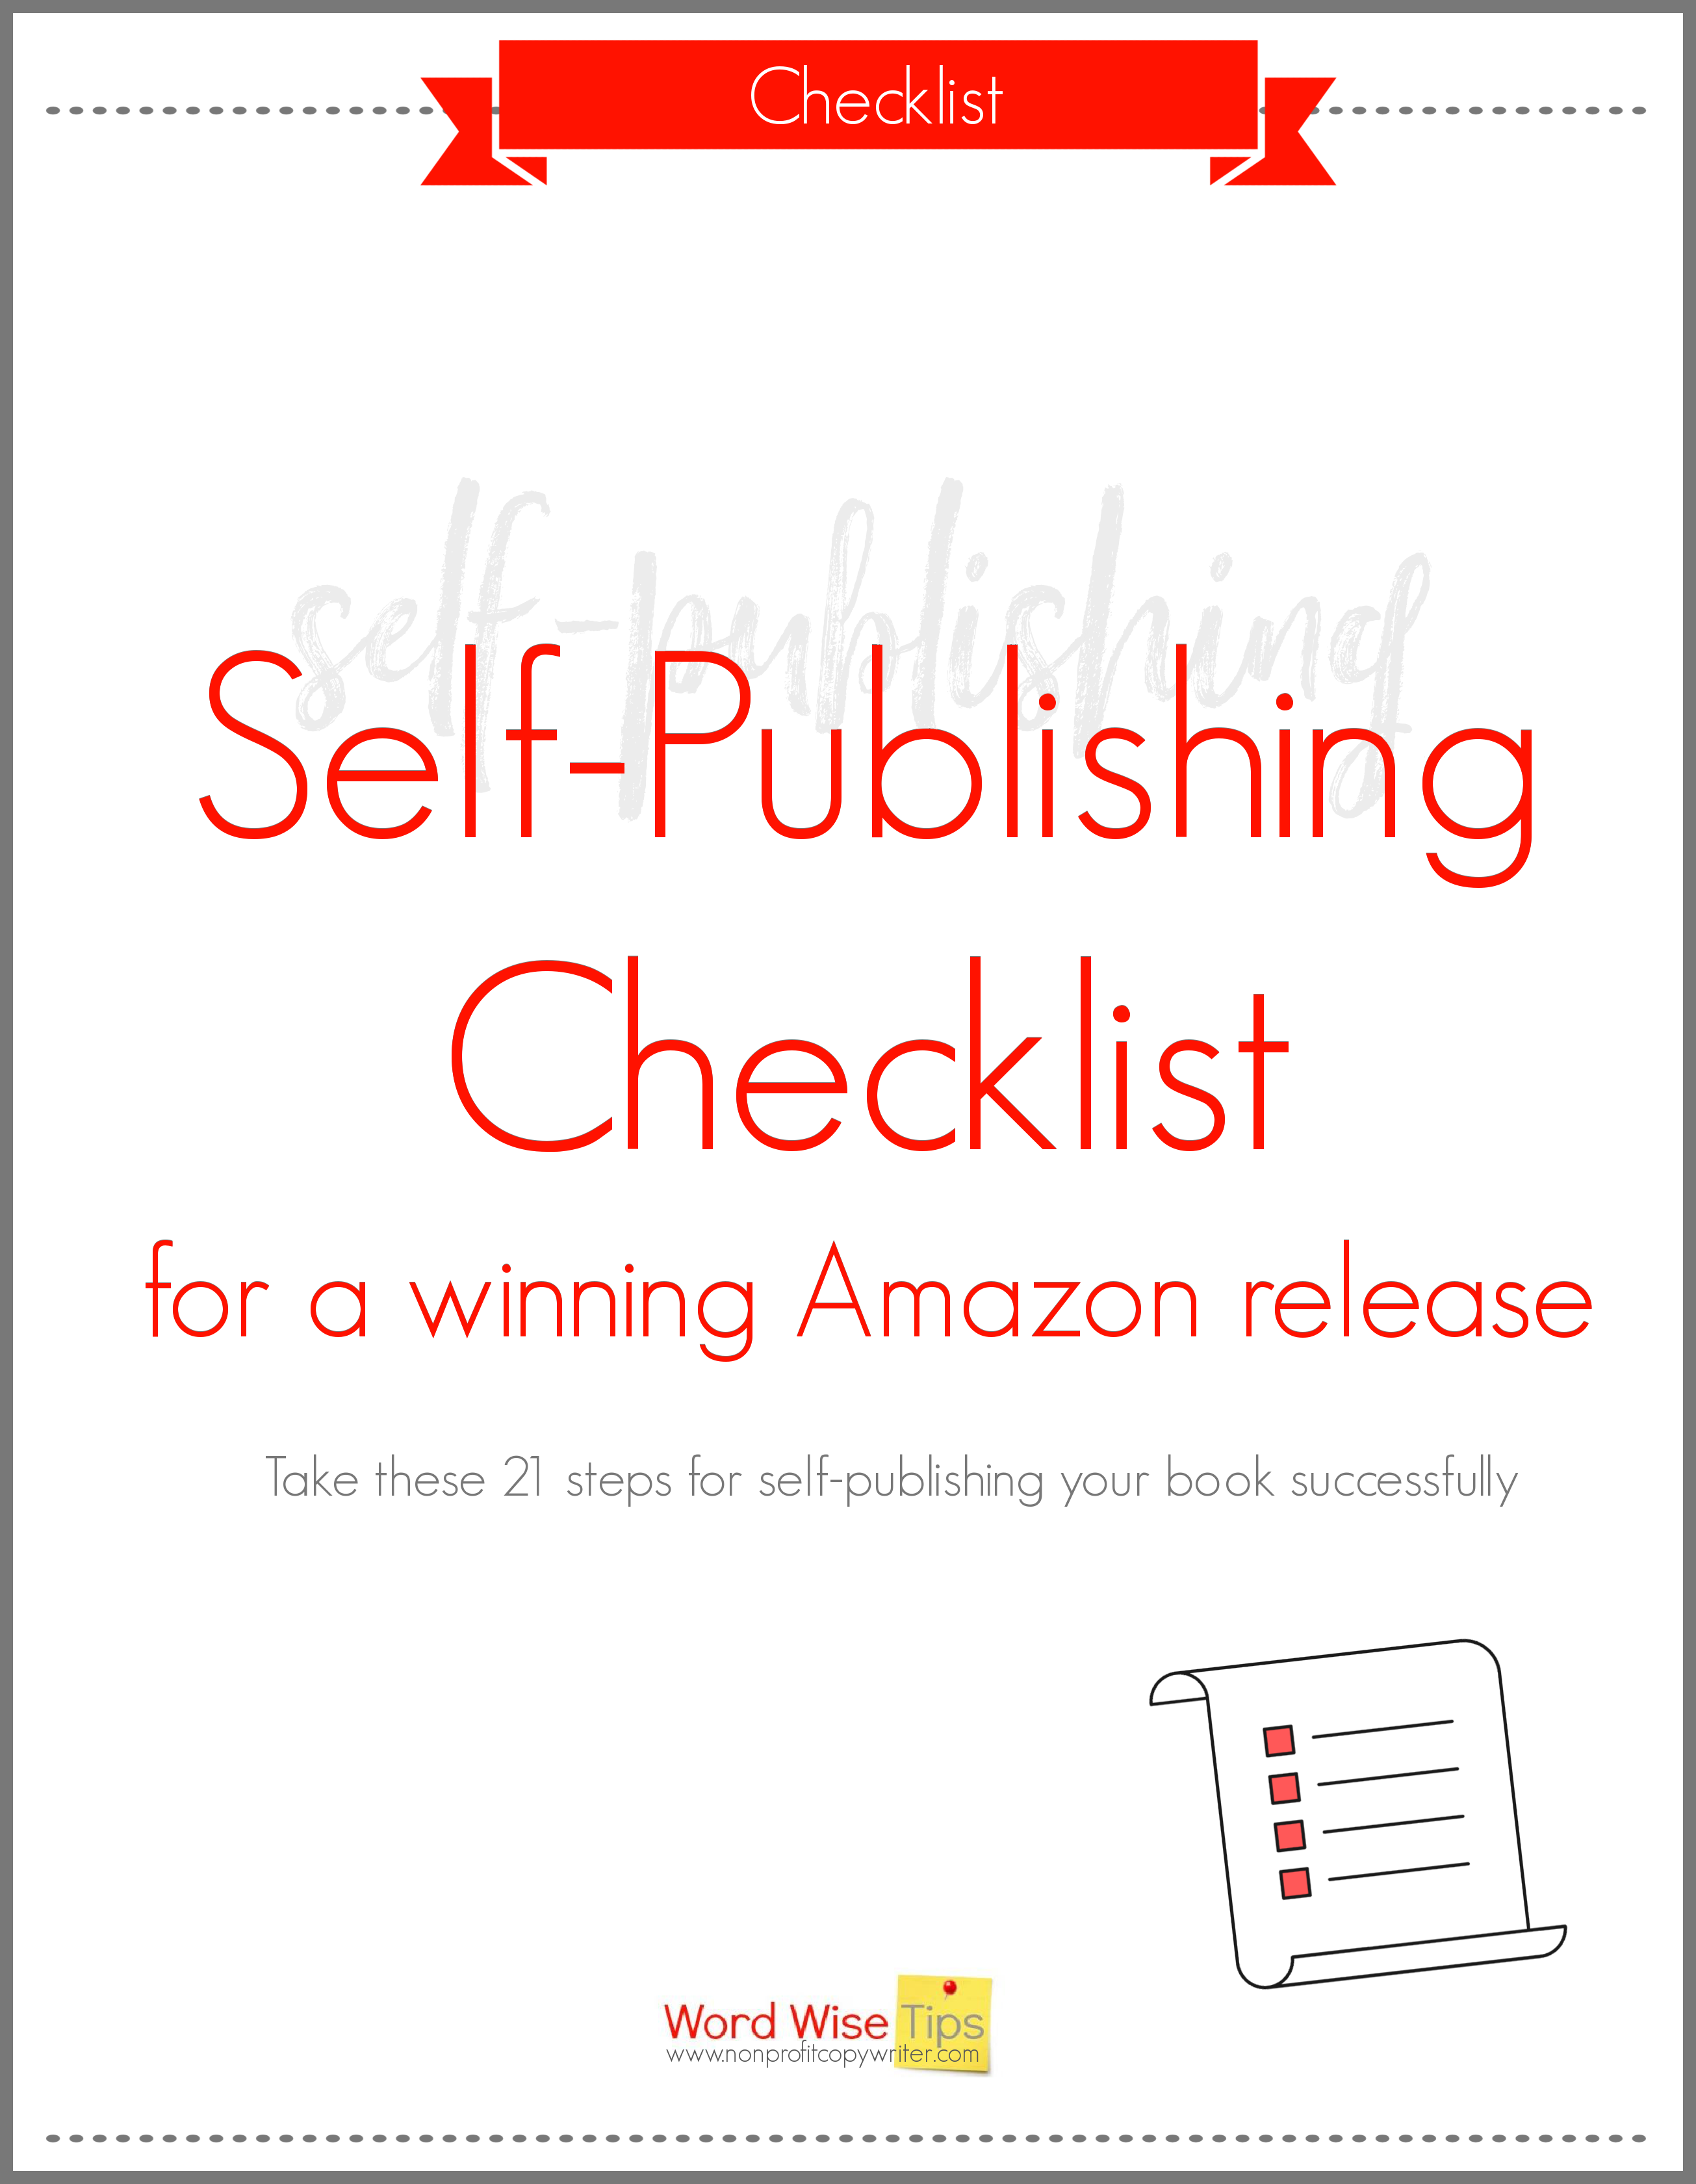 Self-publishing checklist with Word Wise at Nonprofit Copywriter #WritingTips #WritingABook #eBooks #Amazon